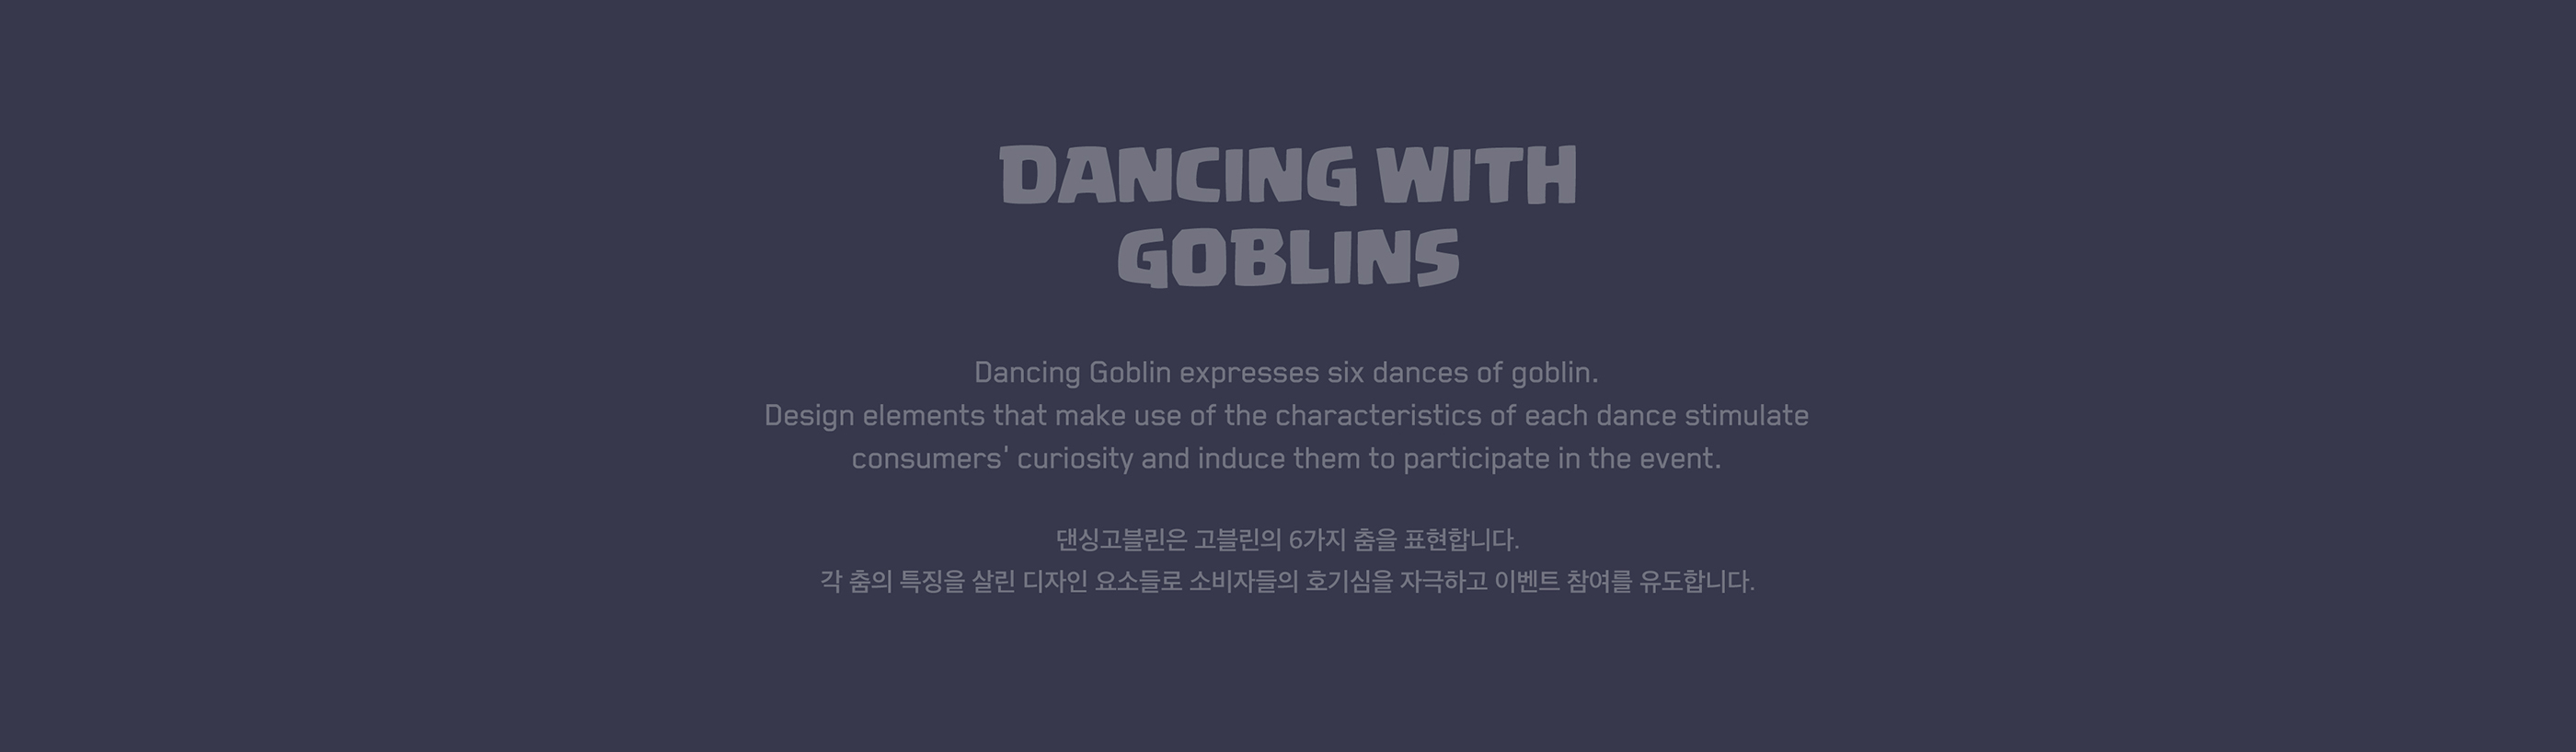 190619_Dancing_Goblin_PR